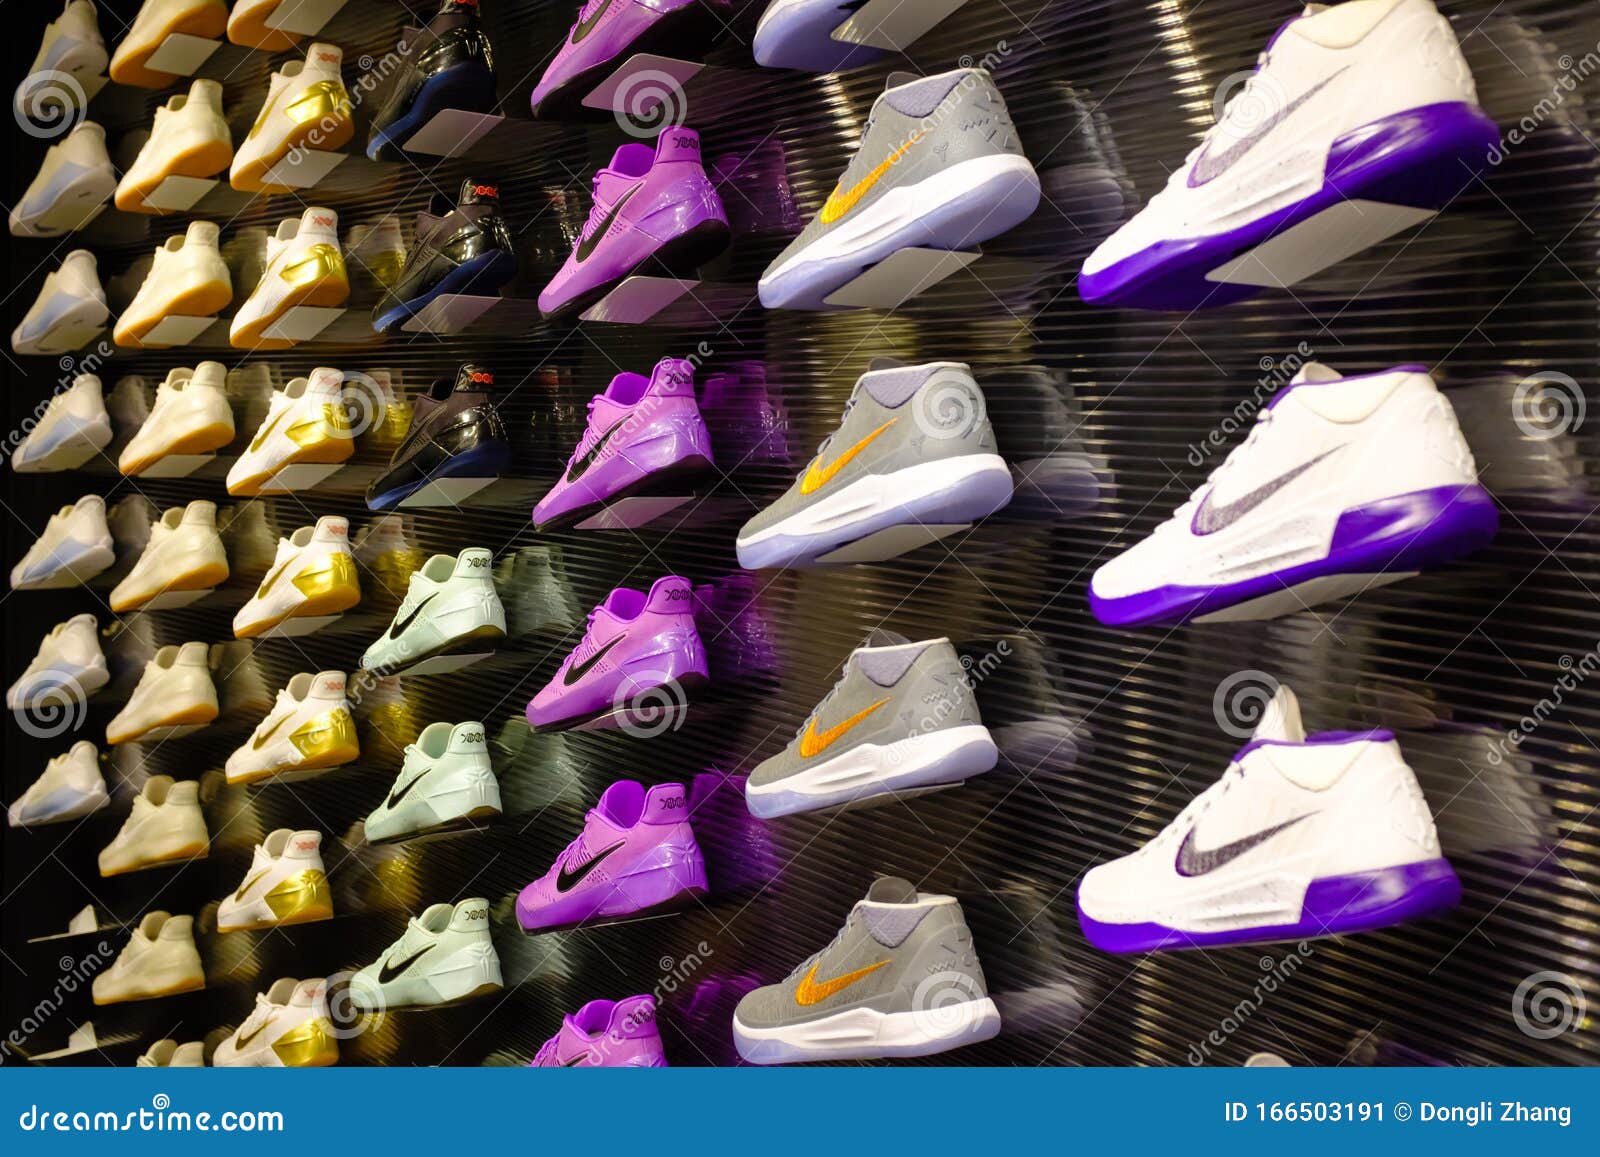 Singapore-21 JAN 2017: Nike Shoes Kobe Series Display Wall in Shopping ...